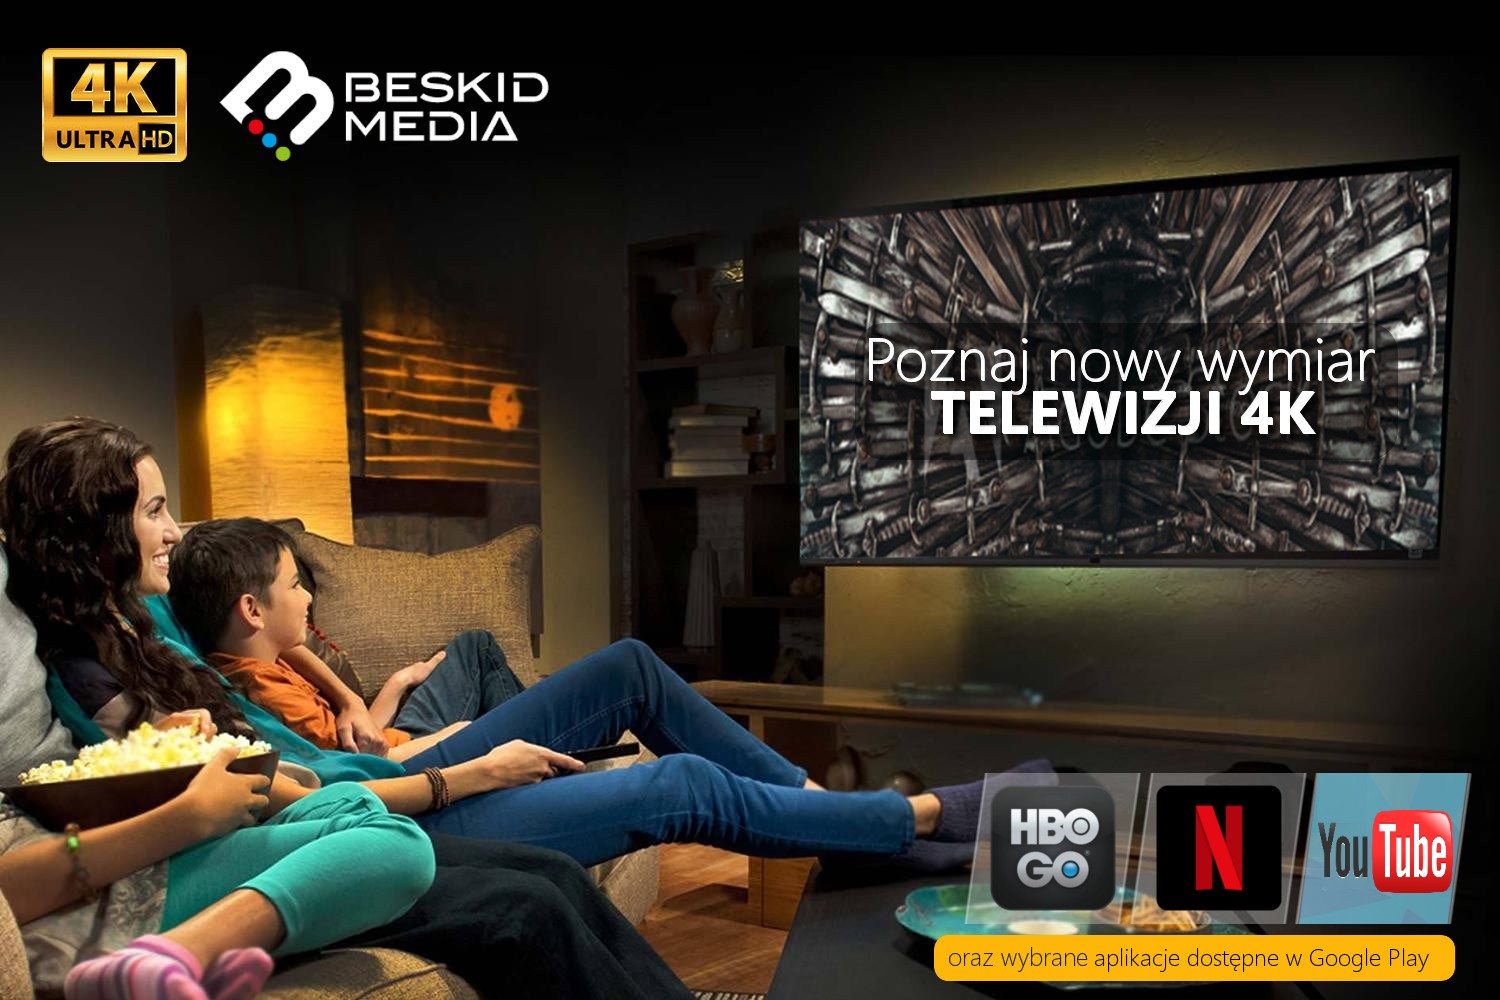 Beskid Media 4K Ultra HD Poznaj nowy wymiar TELEWIZJI 4K